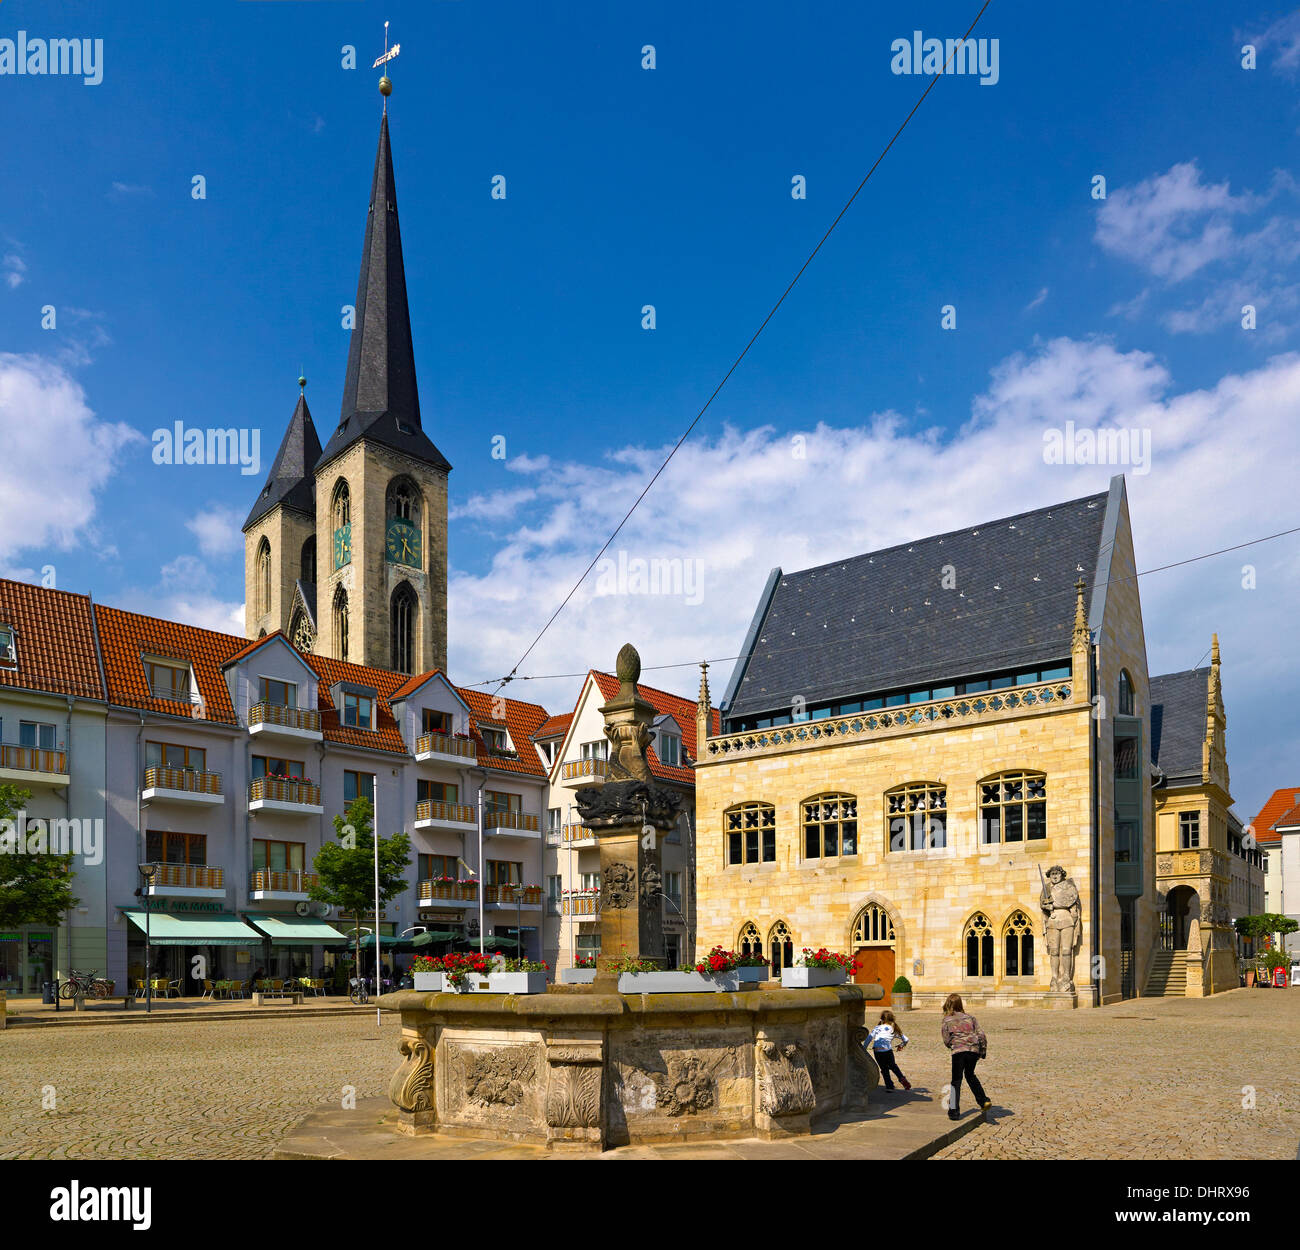 Holzmarkt Platz mit Rathaus und Brunnen, Halberstadt, Sachsen-Anhalt, Deutschland Stockfoto